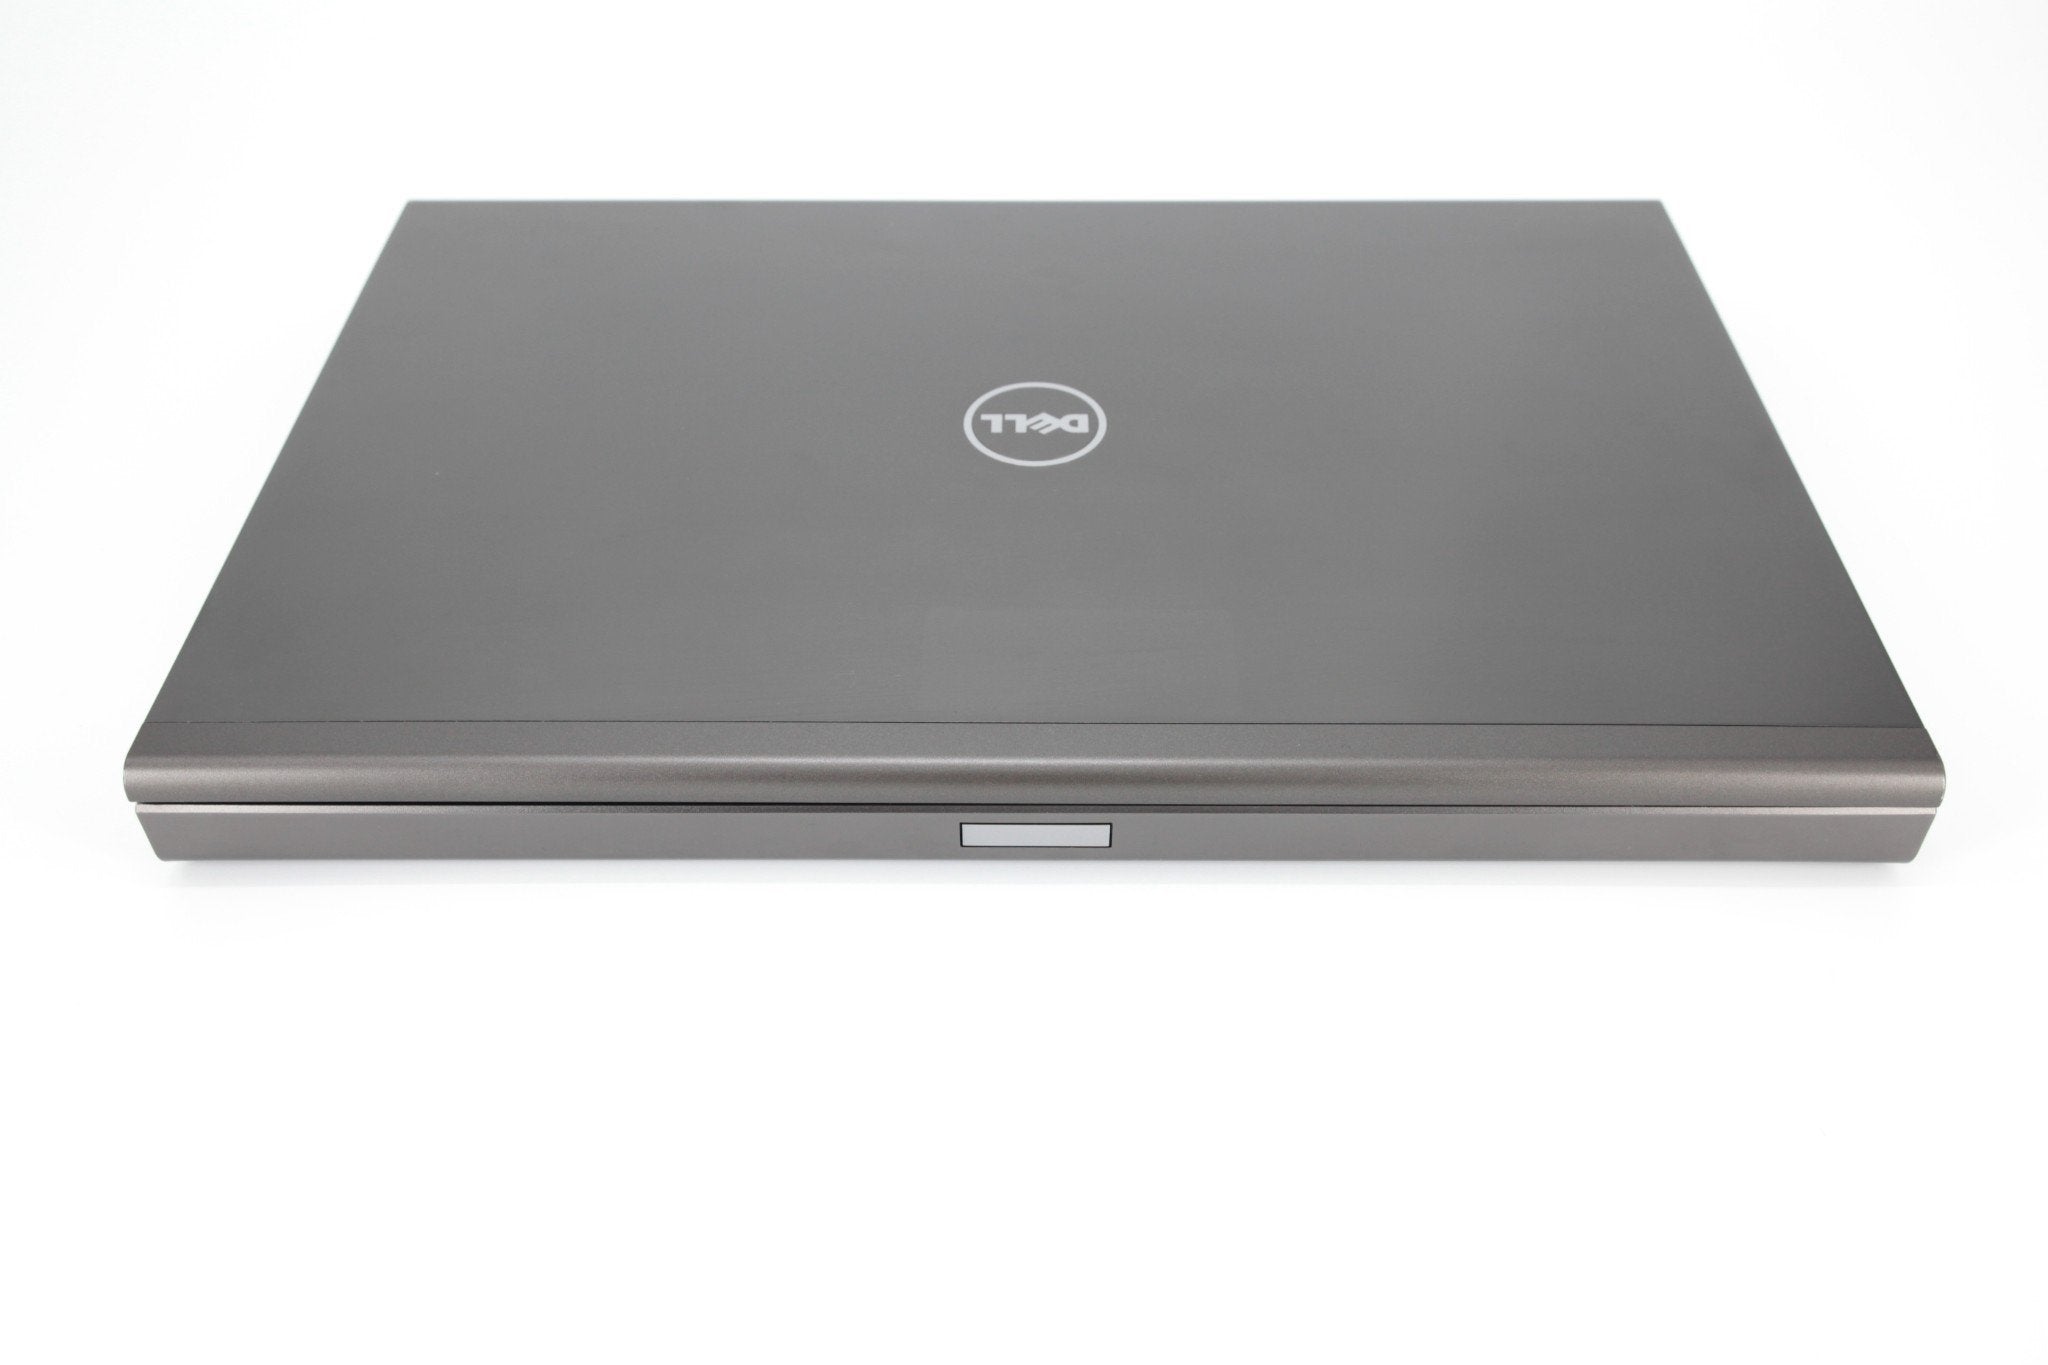 Dell Precision 17" M6800 Laptop: 1TB SSD, 32GB RAM, Core i7, Quadro, Warranty - CruiseTech